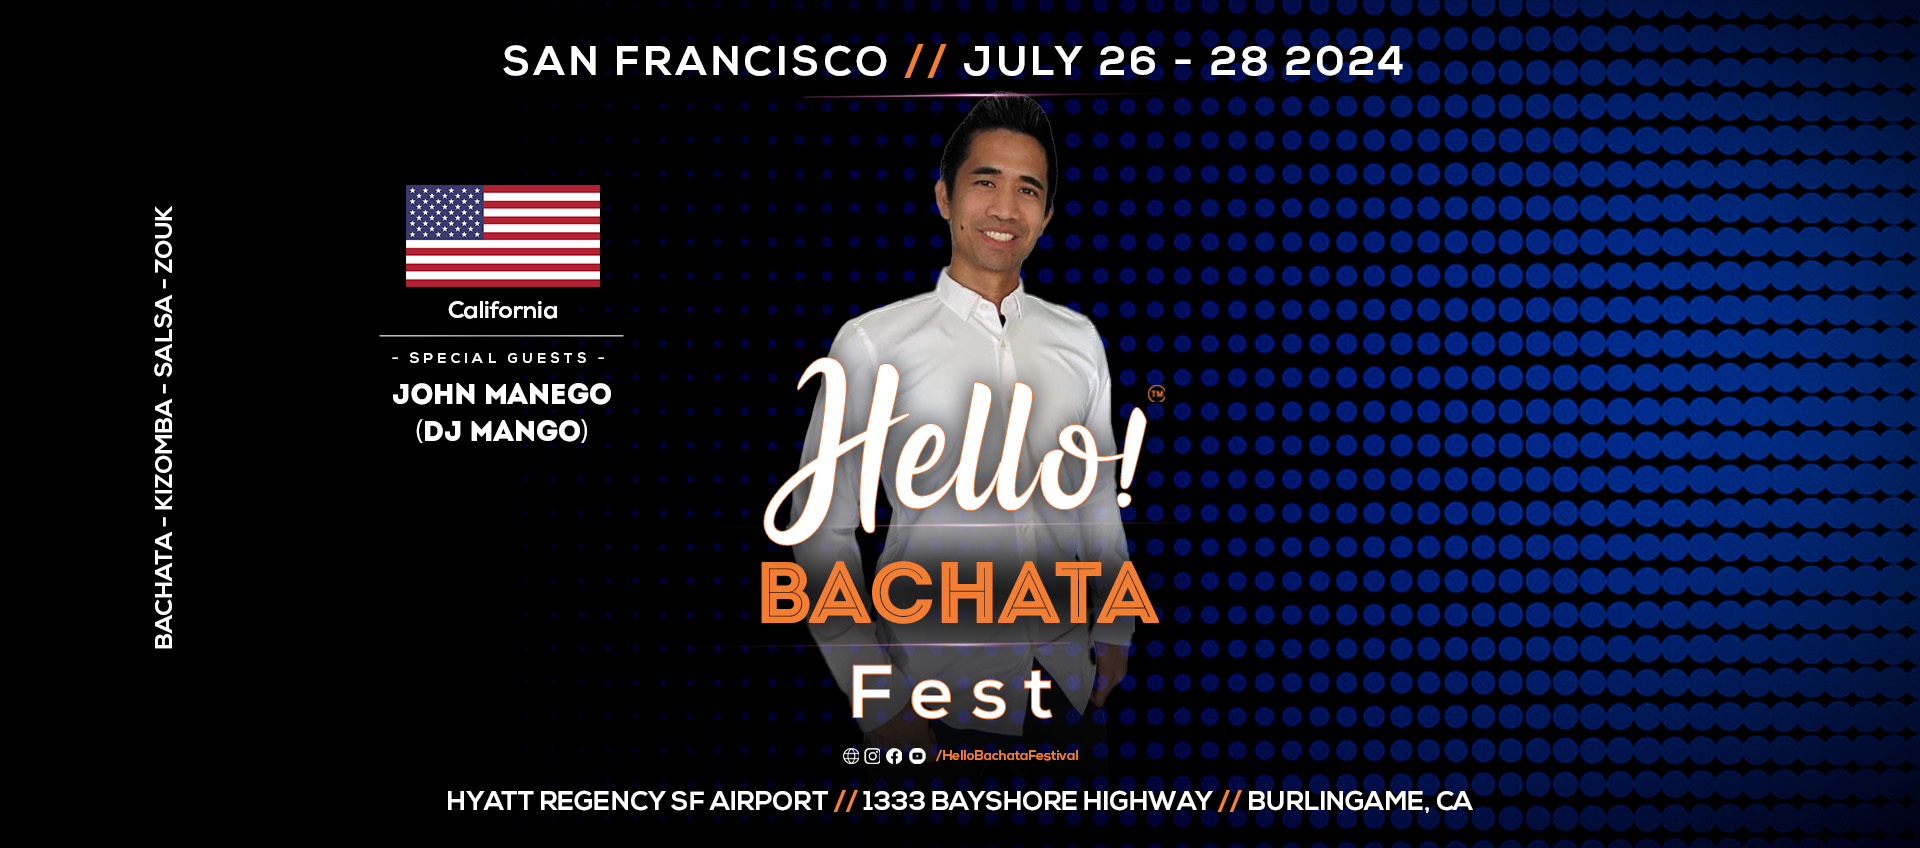 Hello! Bachata Fest - John Manego - DJ Mango - Bachata